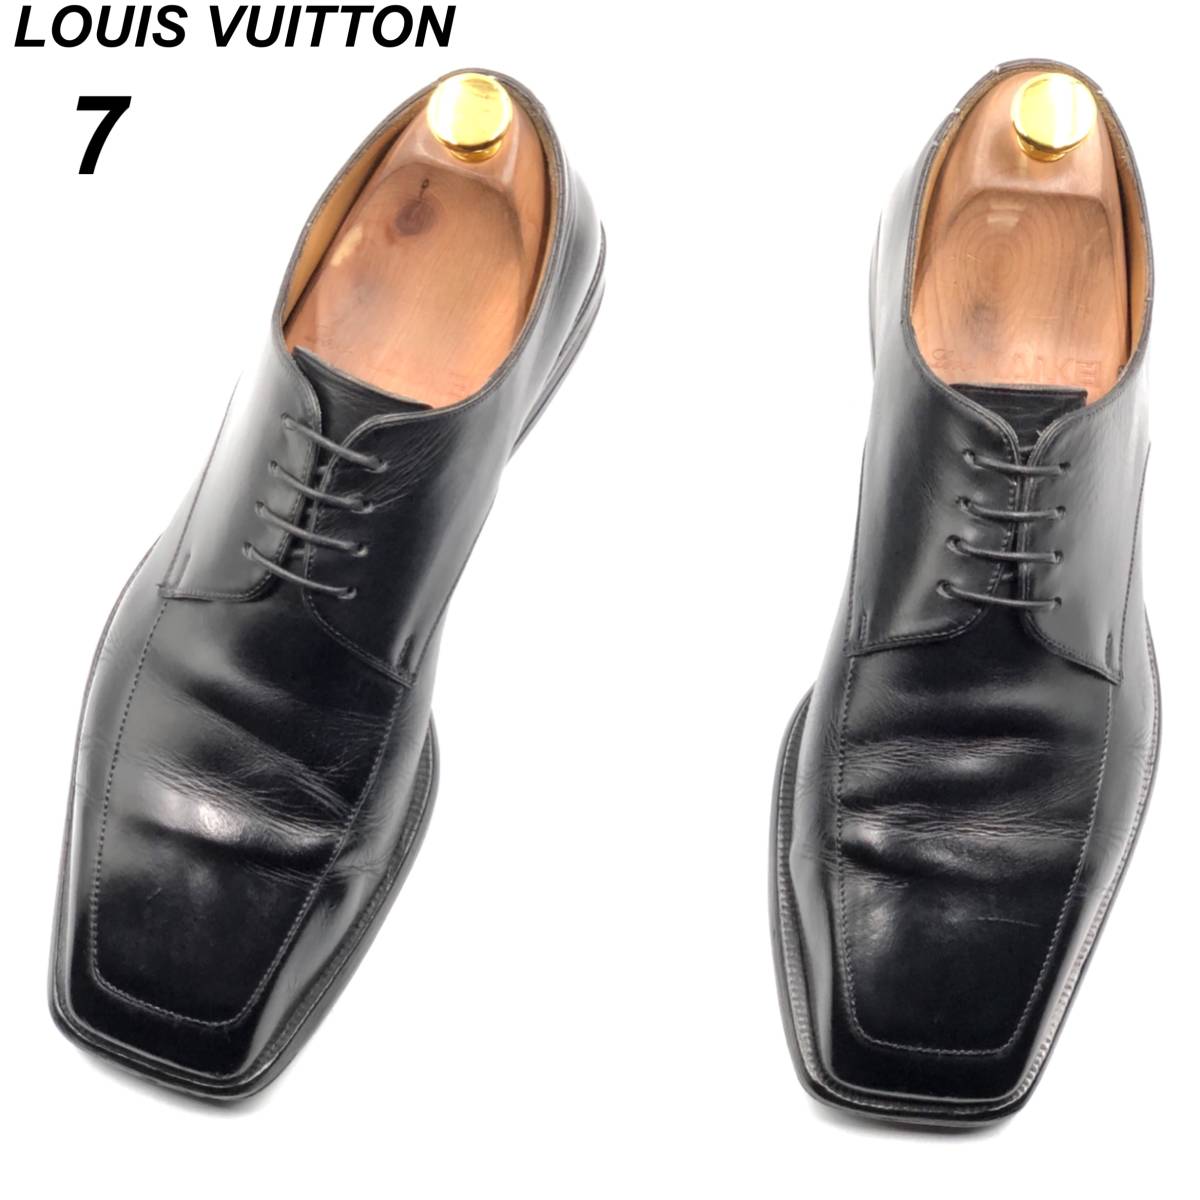 即決 Louis Vuitton ルイヴィトン ダミエ 25cm 7 ST0043 メンズ レザー